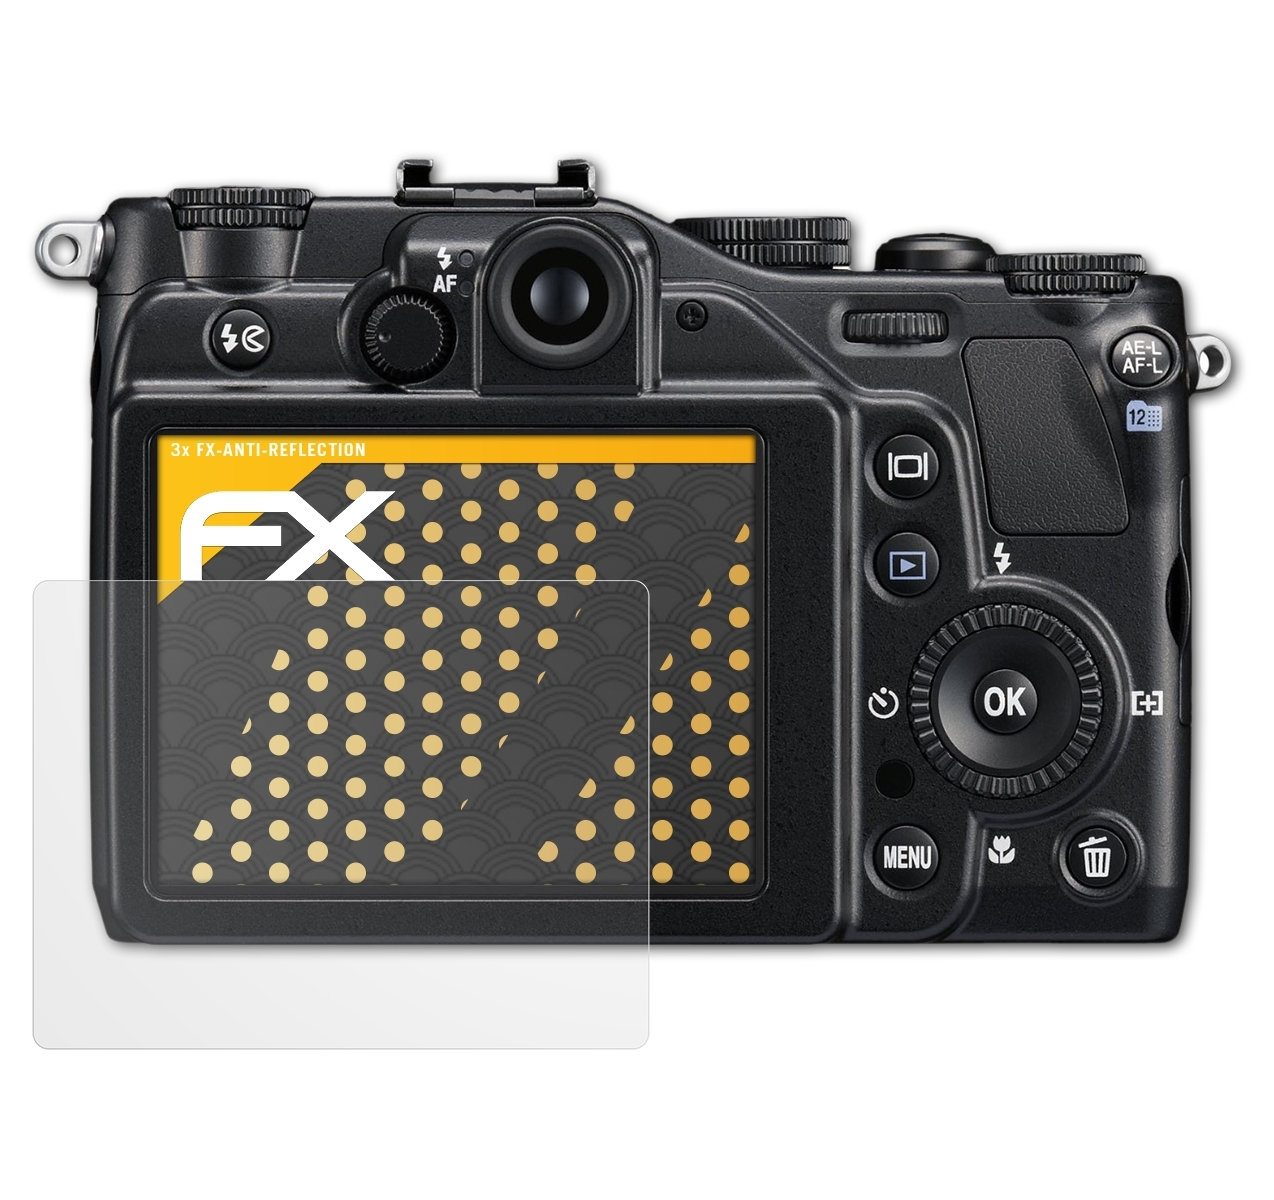 Nikon FX-Antireflex Coolpix Displayschutz(für ATFOLIX P7000) 3x